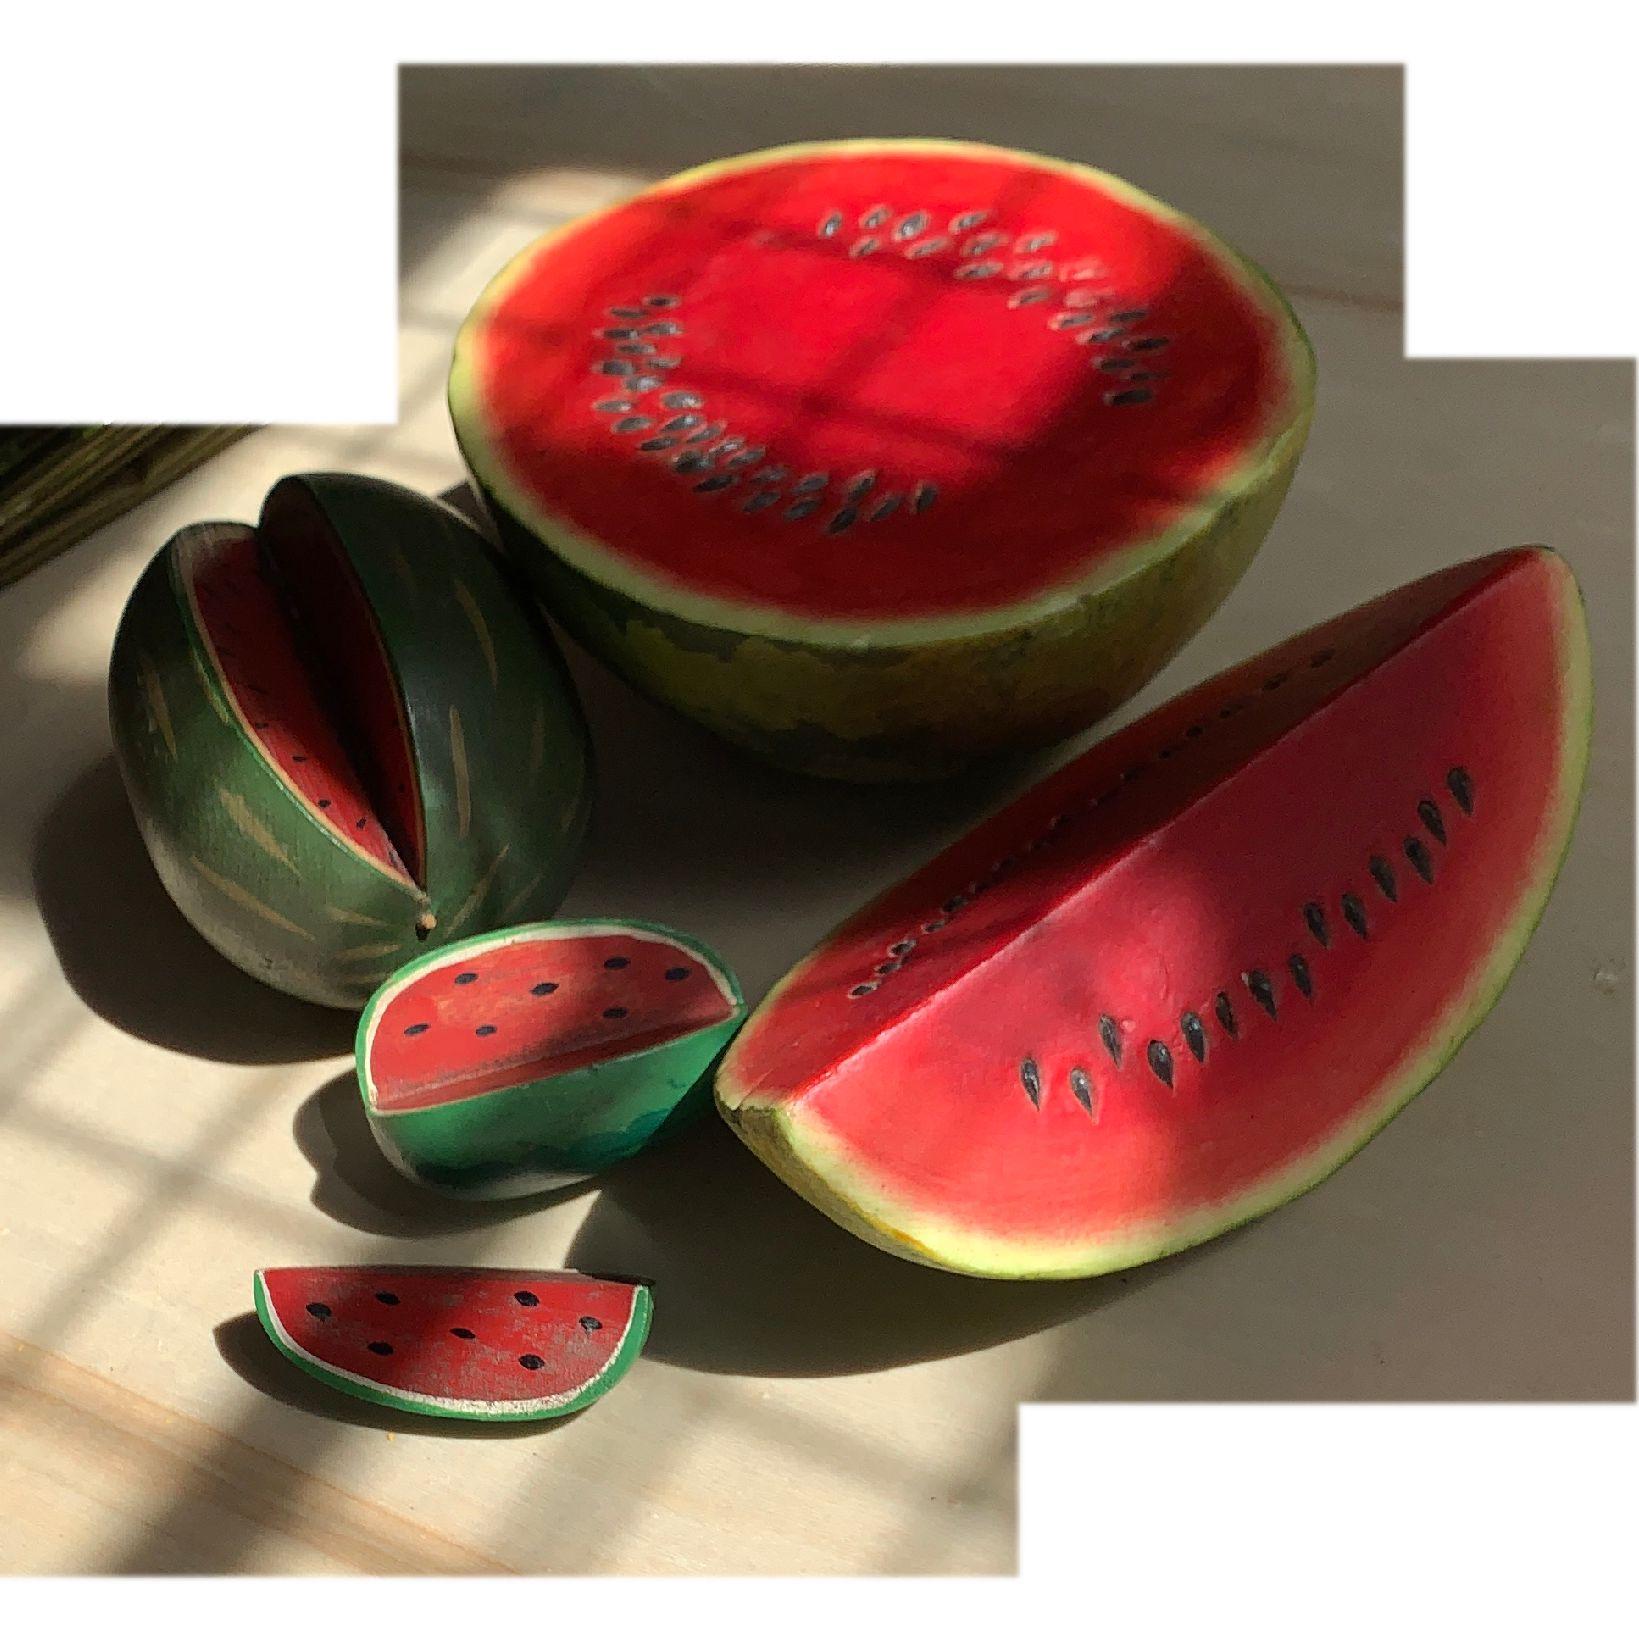 Vintage Wassermelone handgeschnitzte Skulptur Set, Decoy Dekor, Trompe L'Oeil, handbemalt Melone skulpturalen Set. Wunderschön. Signiert vom Künstler.
Das größte Stück misst ungefähr: 7